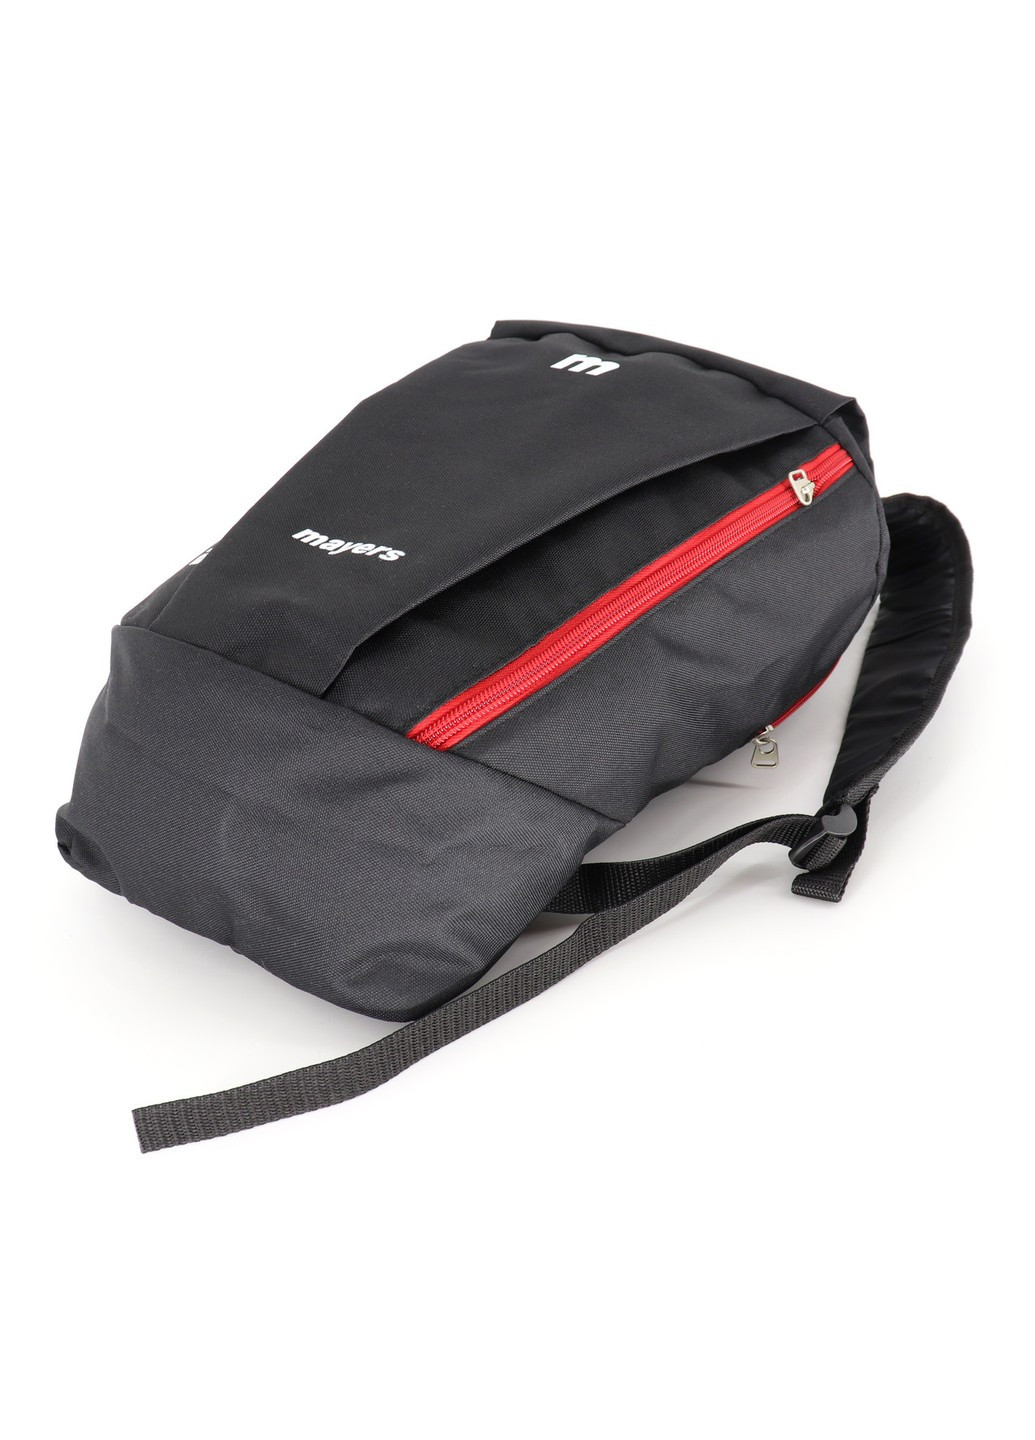 Чорний дитячий спортивний рюкзак Mayers з червоною блискавкою унісекс для школи тренувань та прогулянок 10 літрів No Brand (258591323)